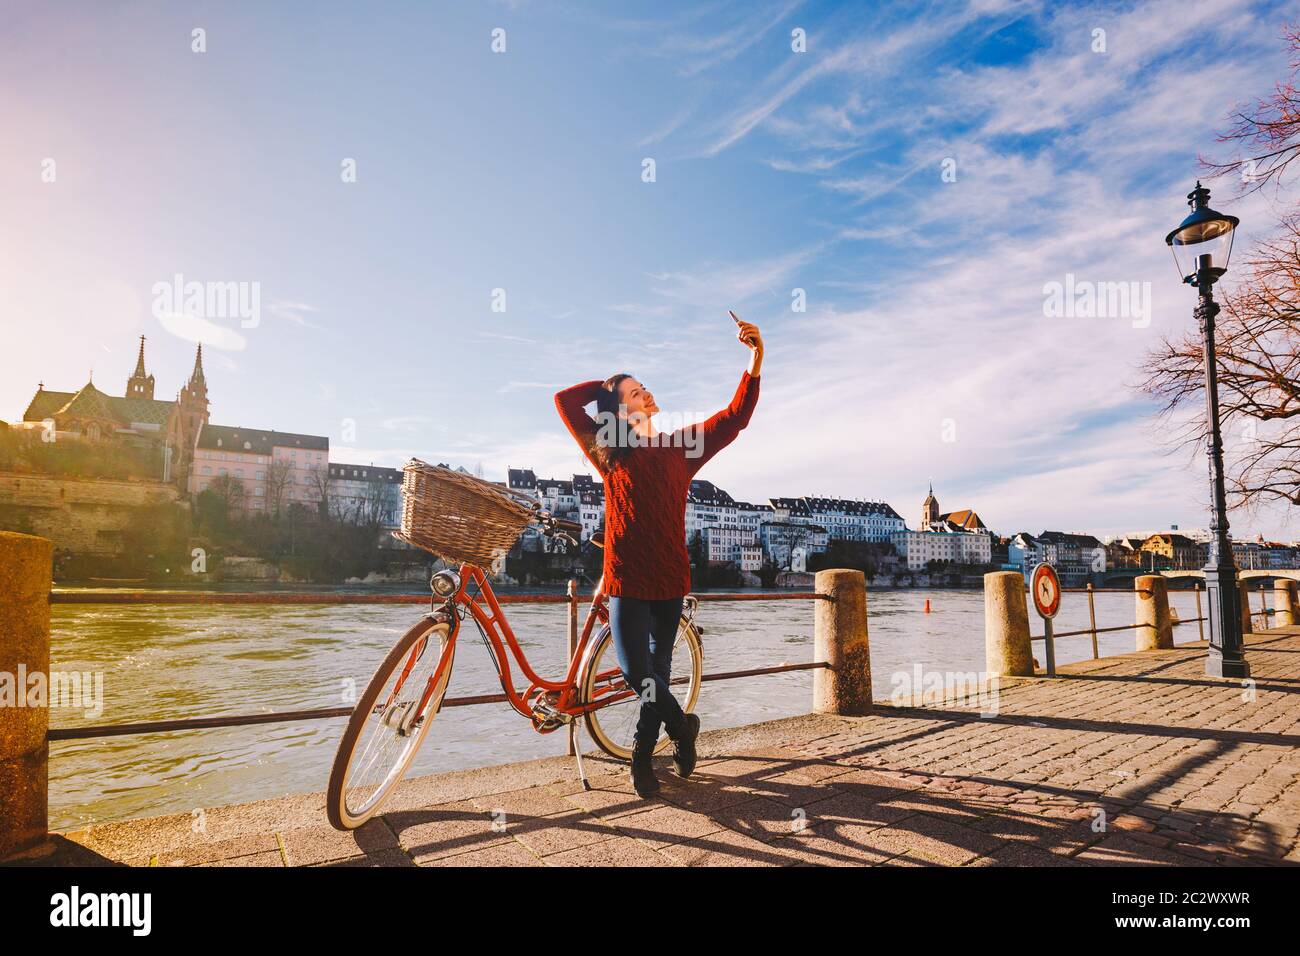 Une belle jeune femme avec un vélo rouge rétro fait une photo d'elle-même dans la vieille ville d'Europe sur l'éban du Rhin Banque D'Images